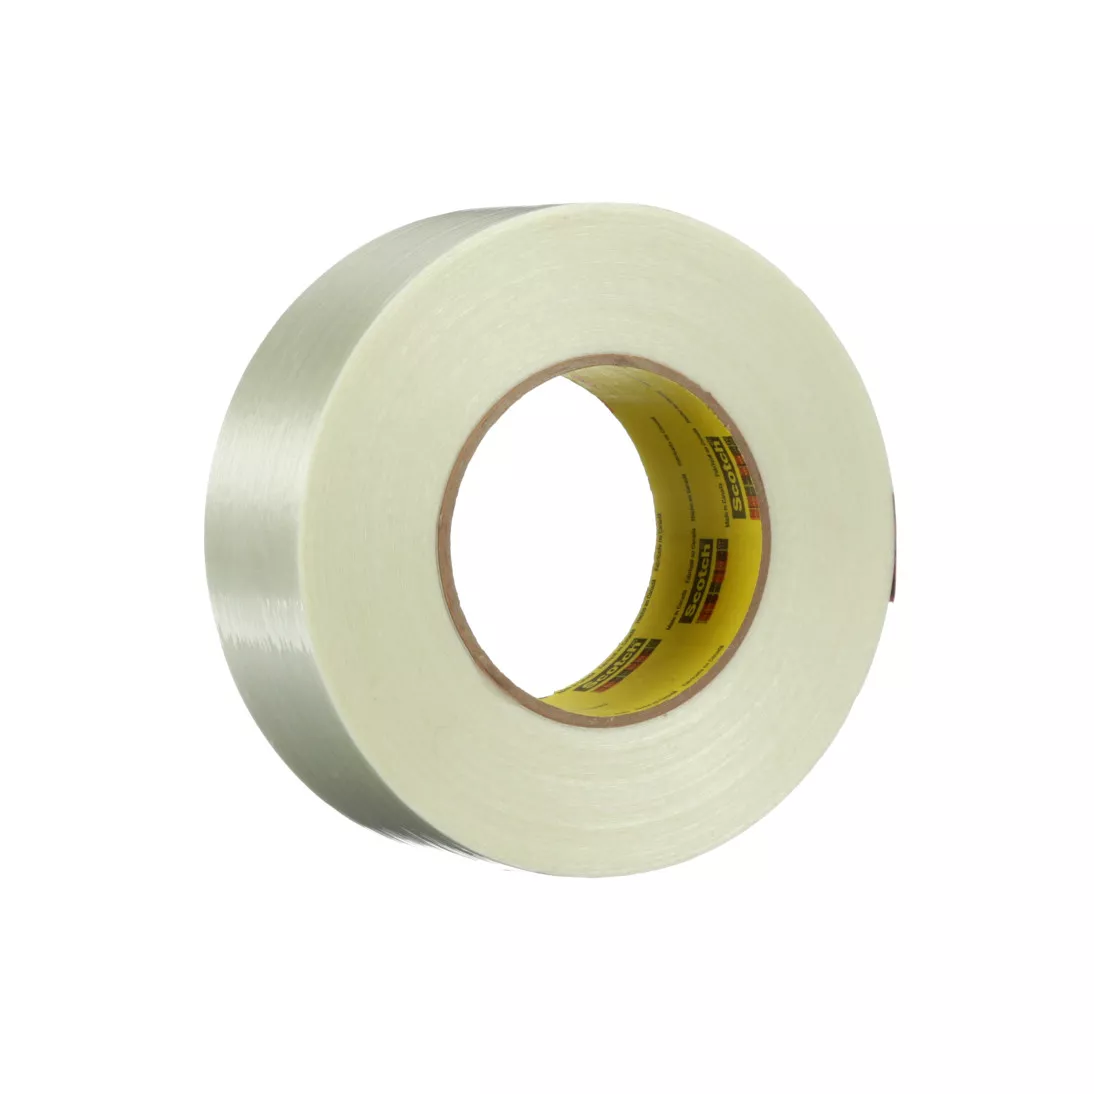 Scotch® High Strength Filament Tape 890RCT, Clear, 48 mm x 55 m, 8 mil,
24 rolls per case